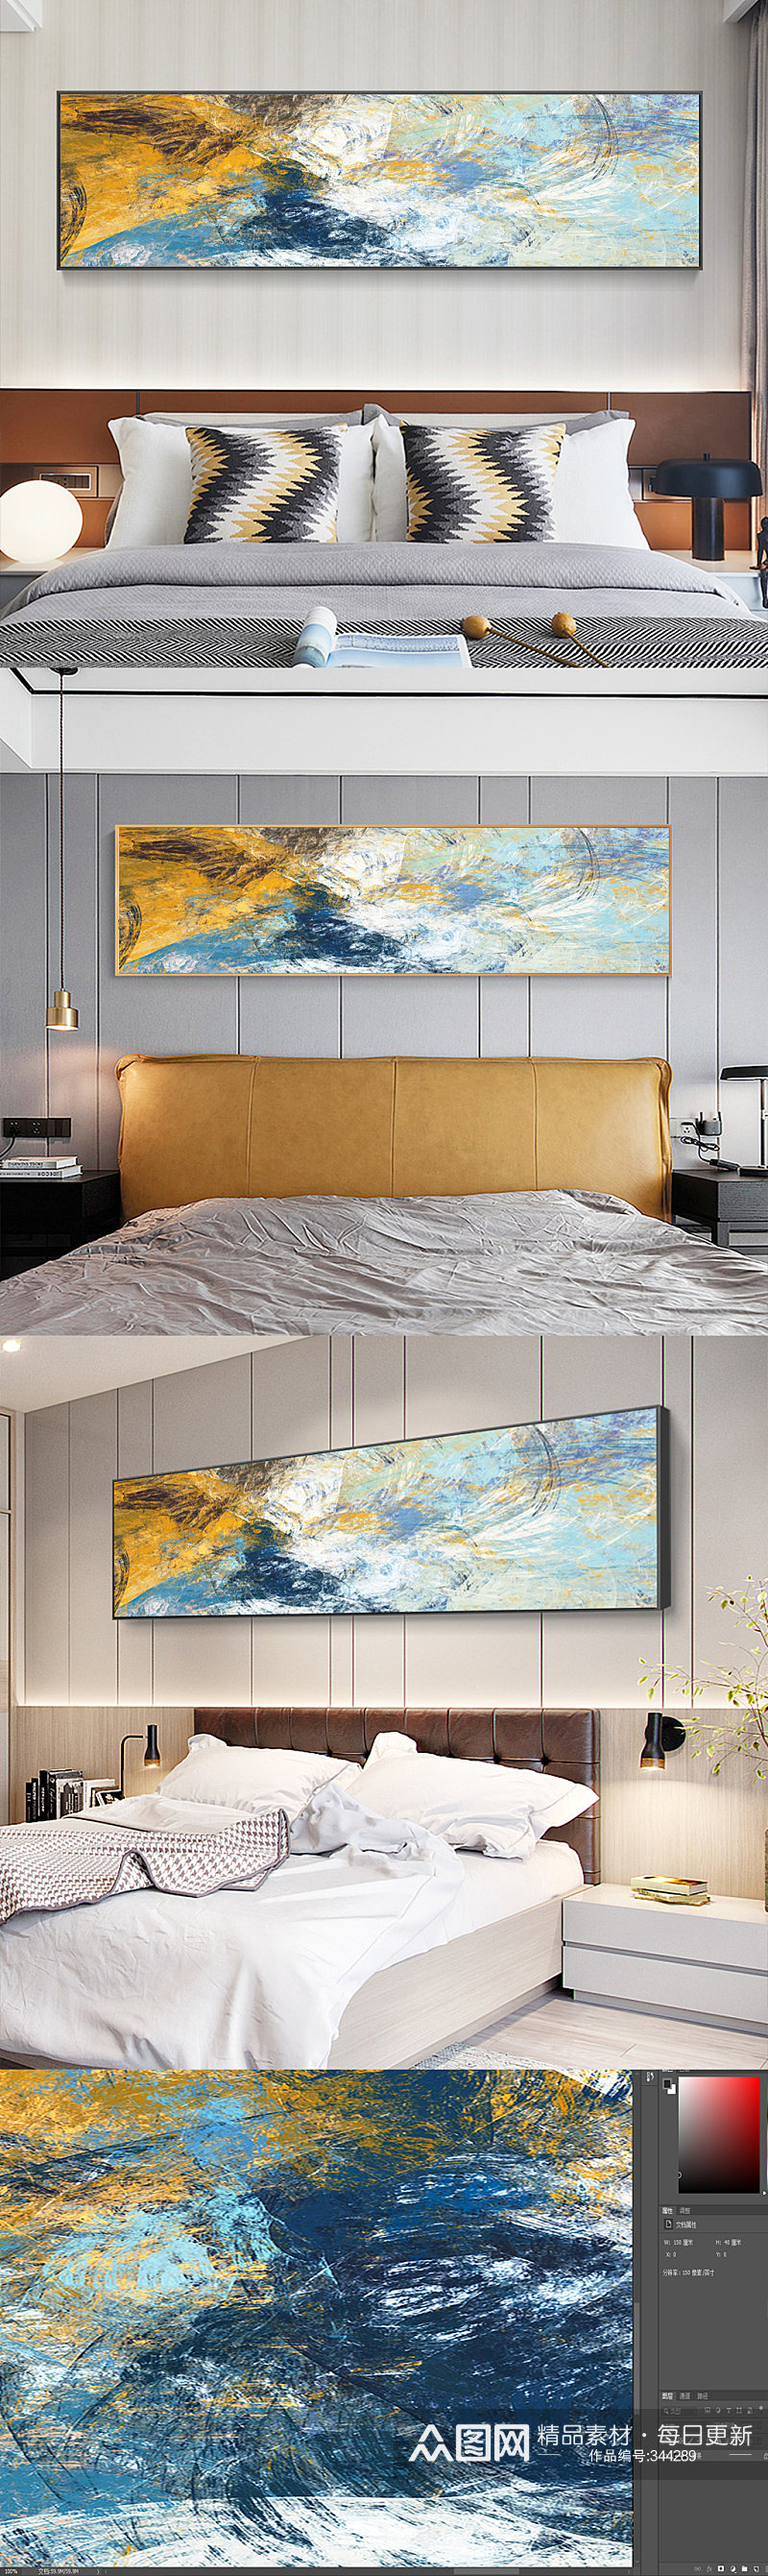 北欧抽象卧室床头画素材